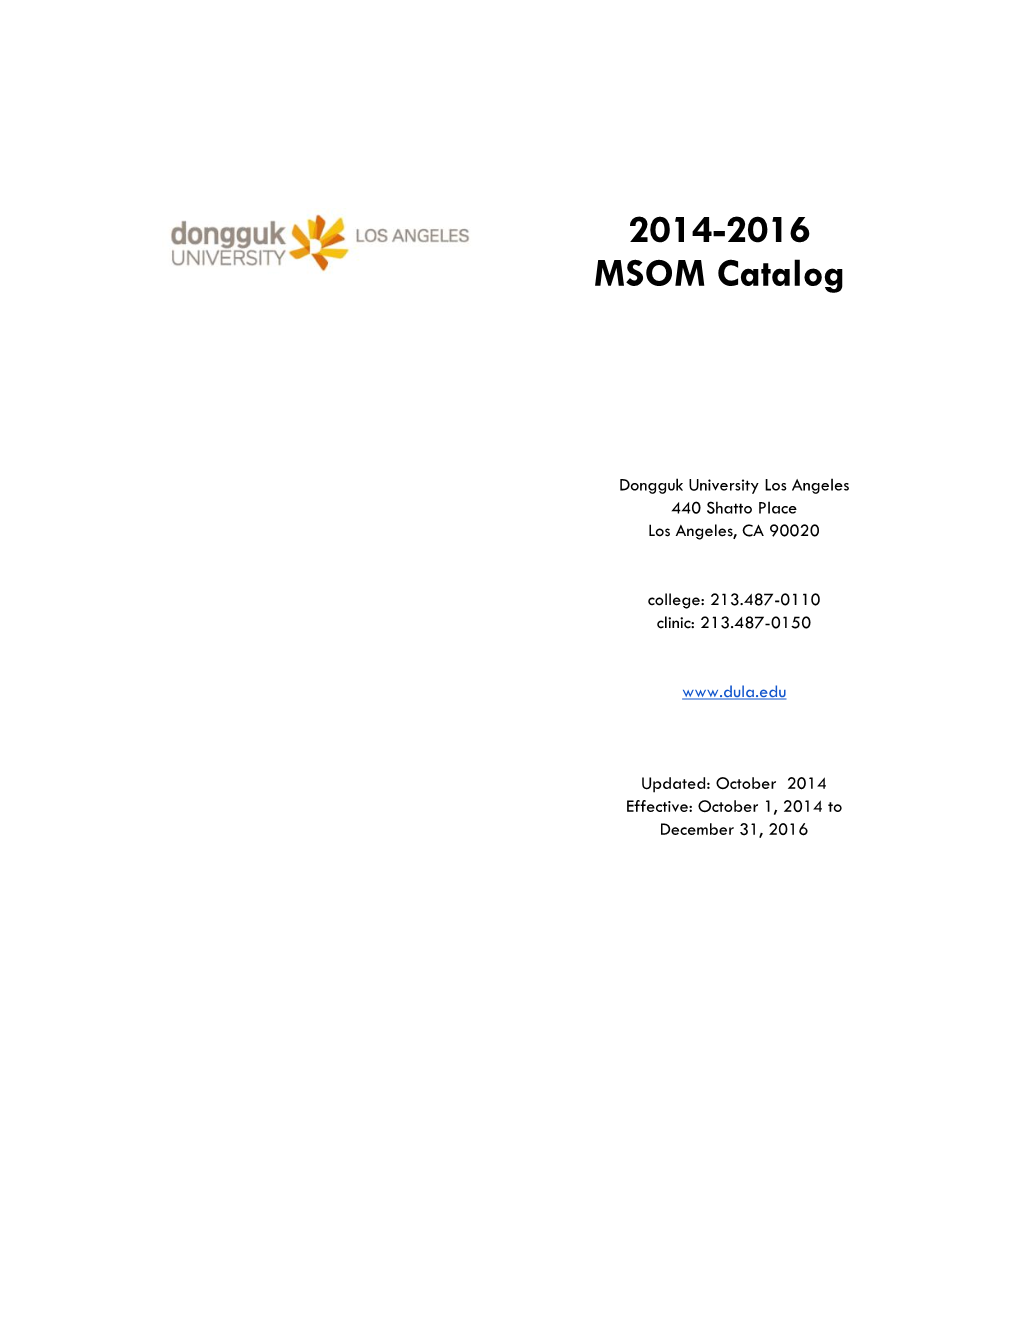 2014-2016 MSOM Catalog